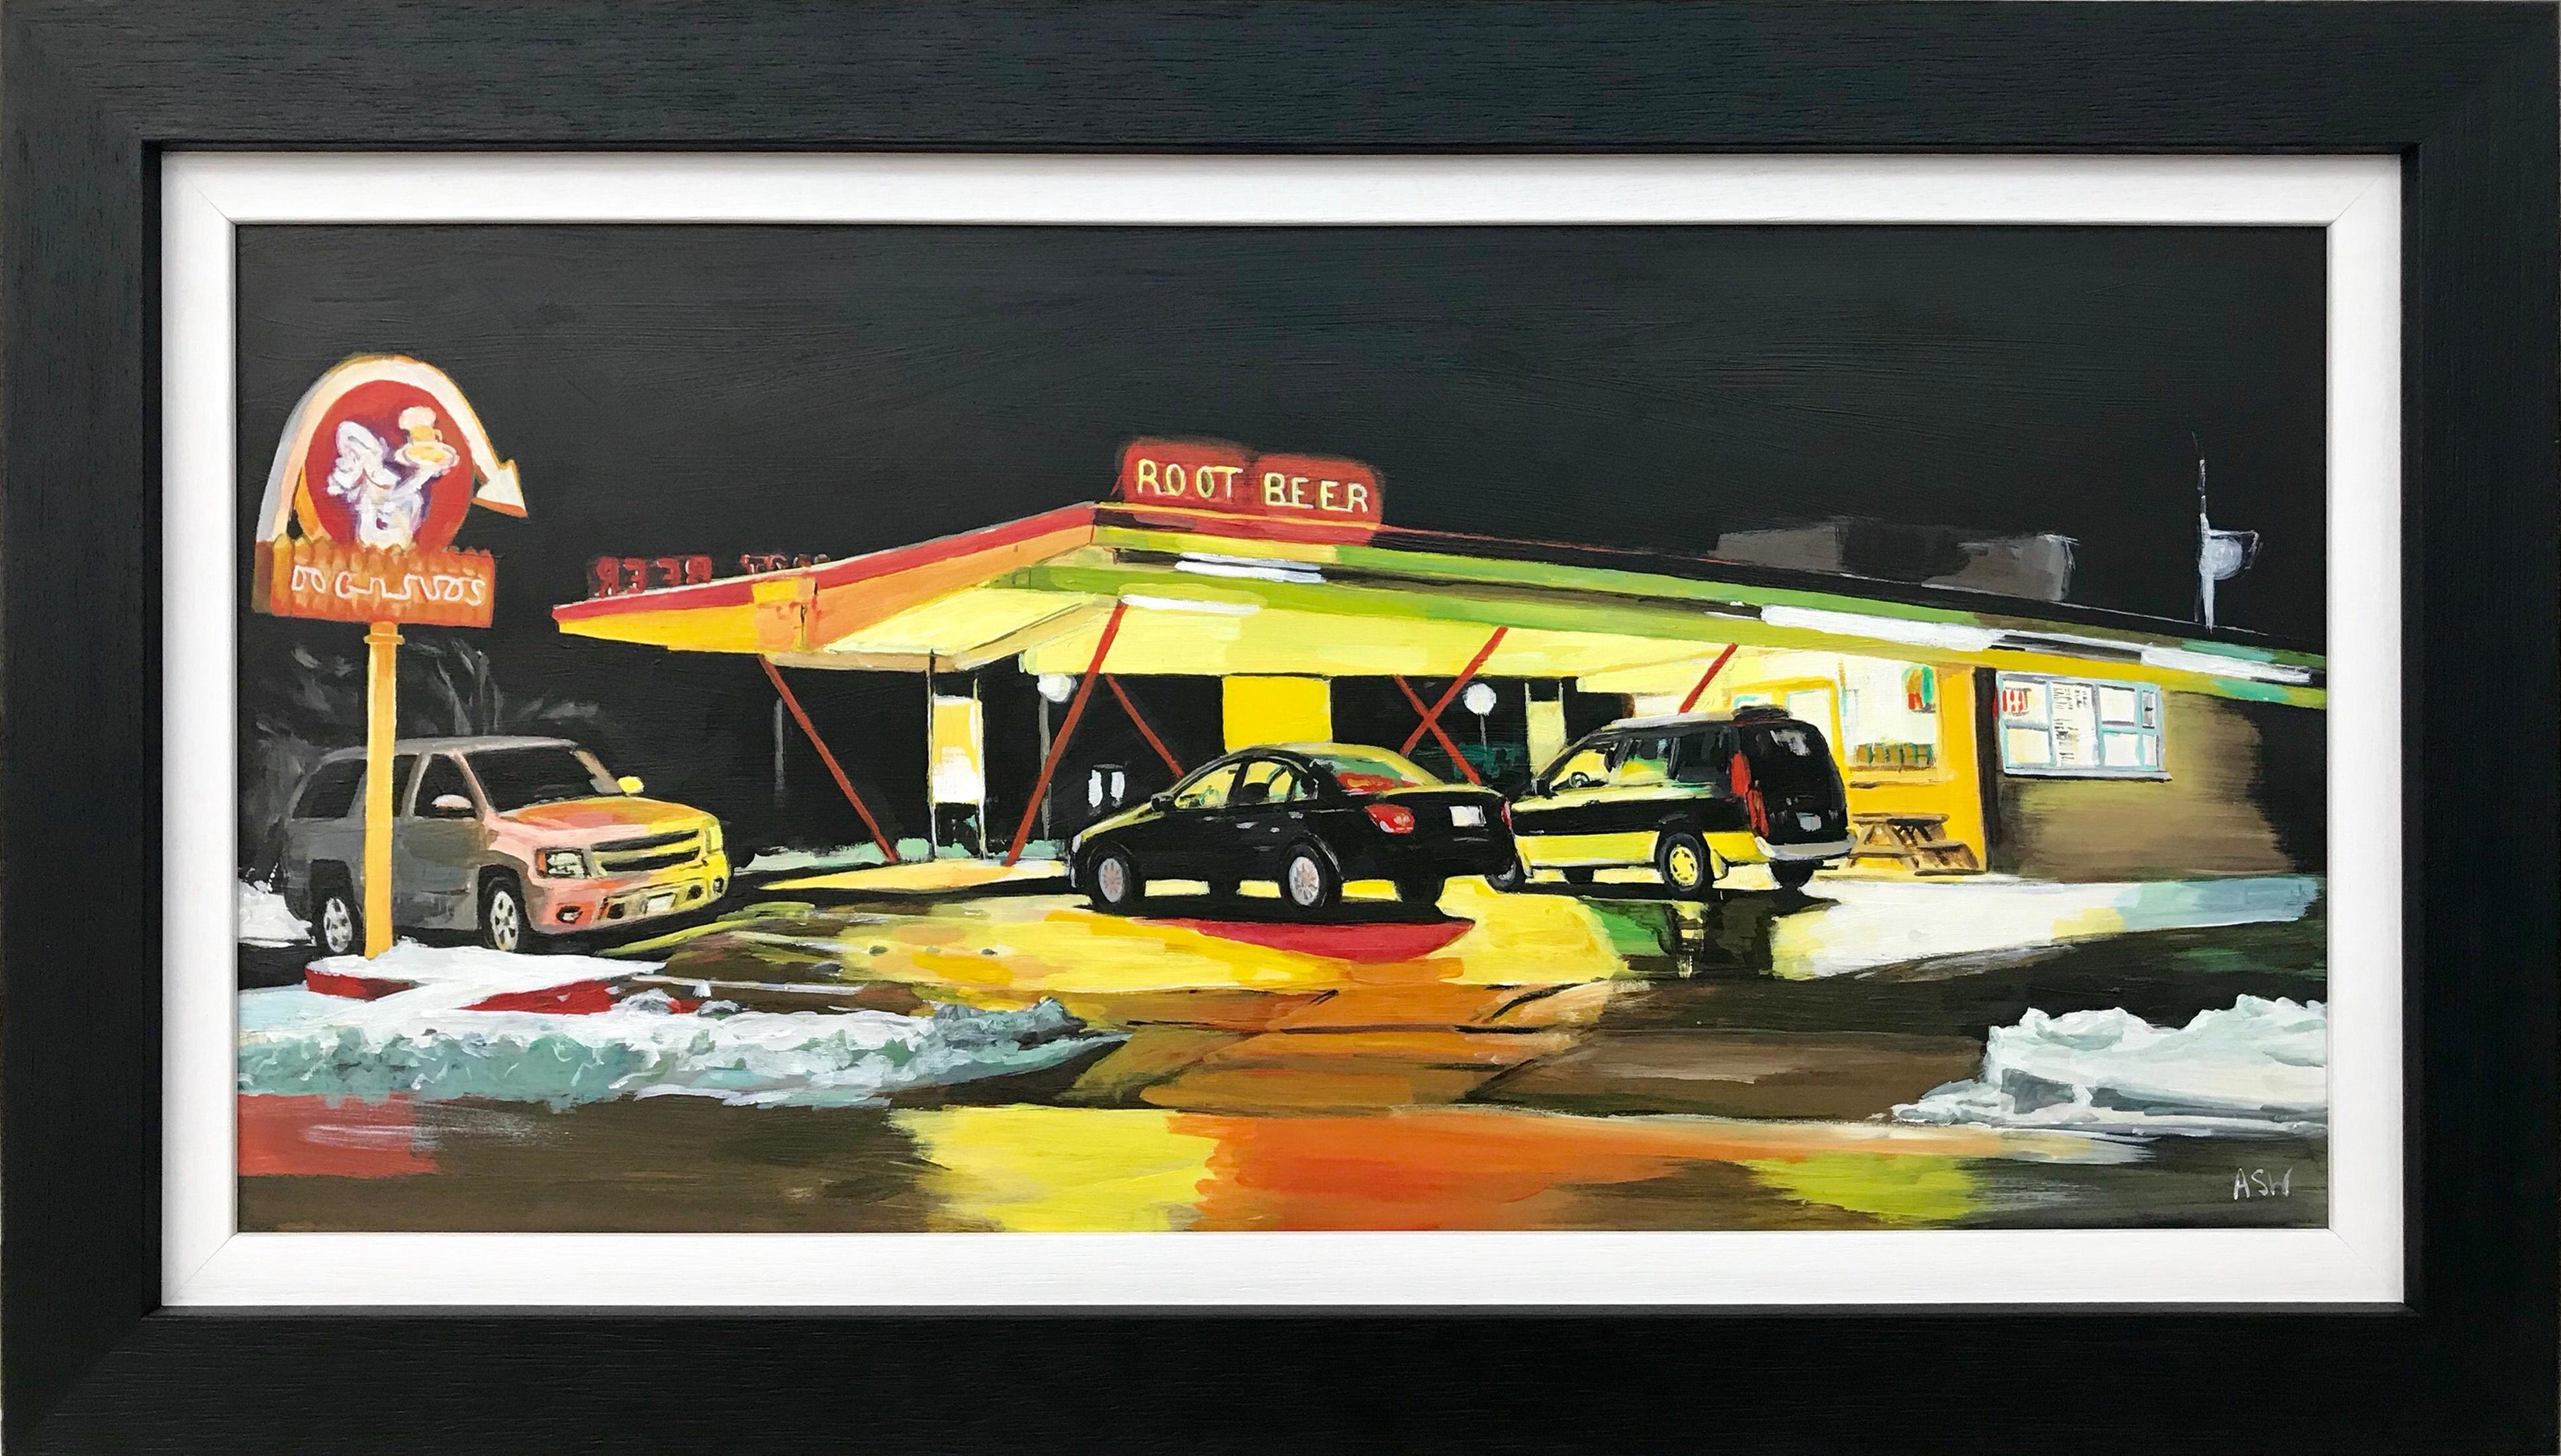 Landscape Painting Angela Wakefield - Route 66 Root Beer - Peinture d'une station de gaz américaine par un artiste contemporain britannique